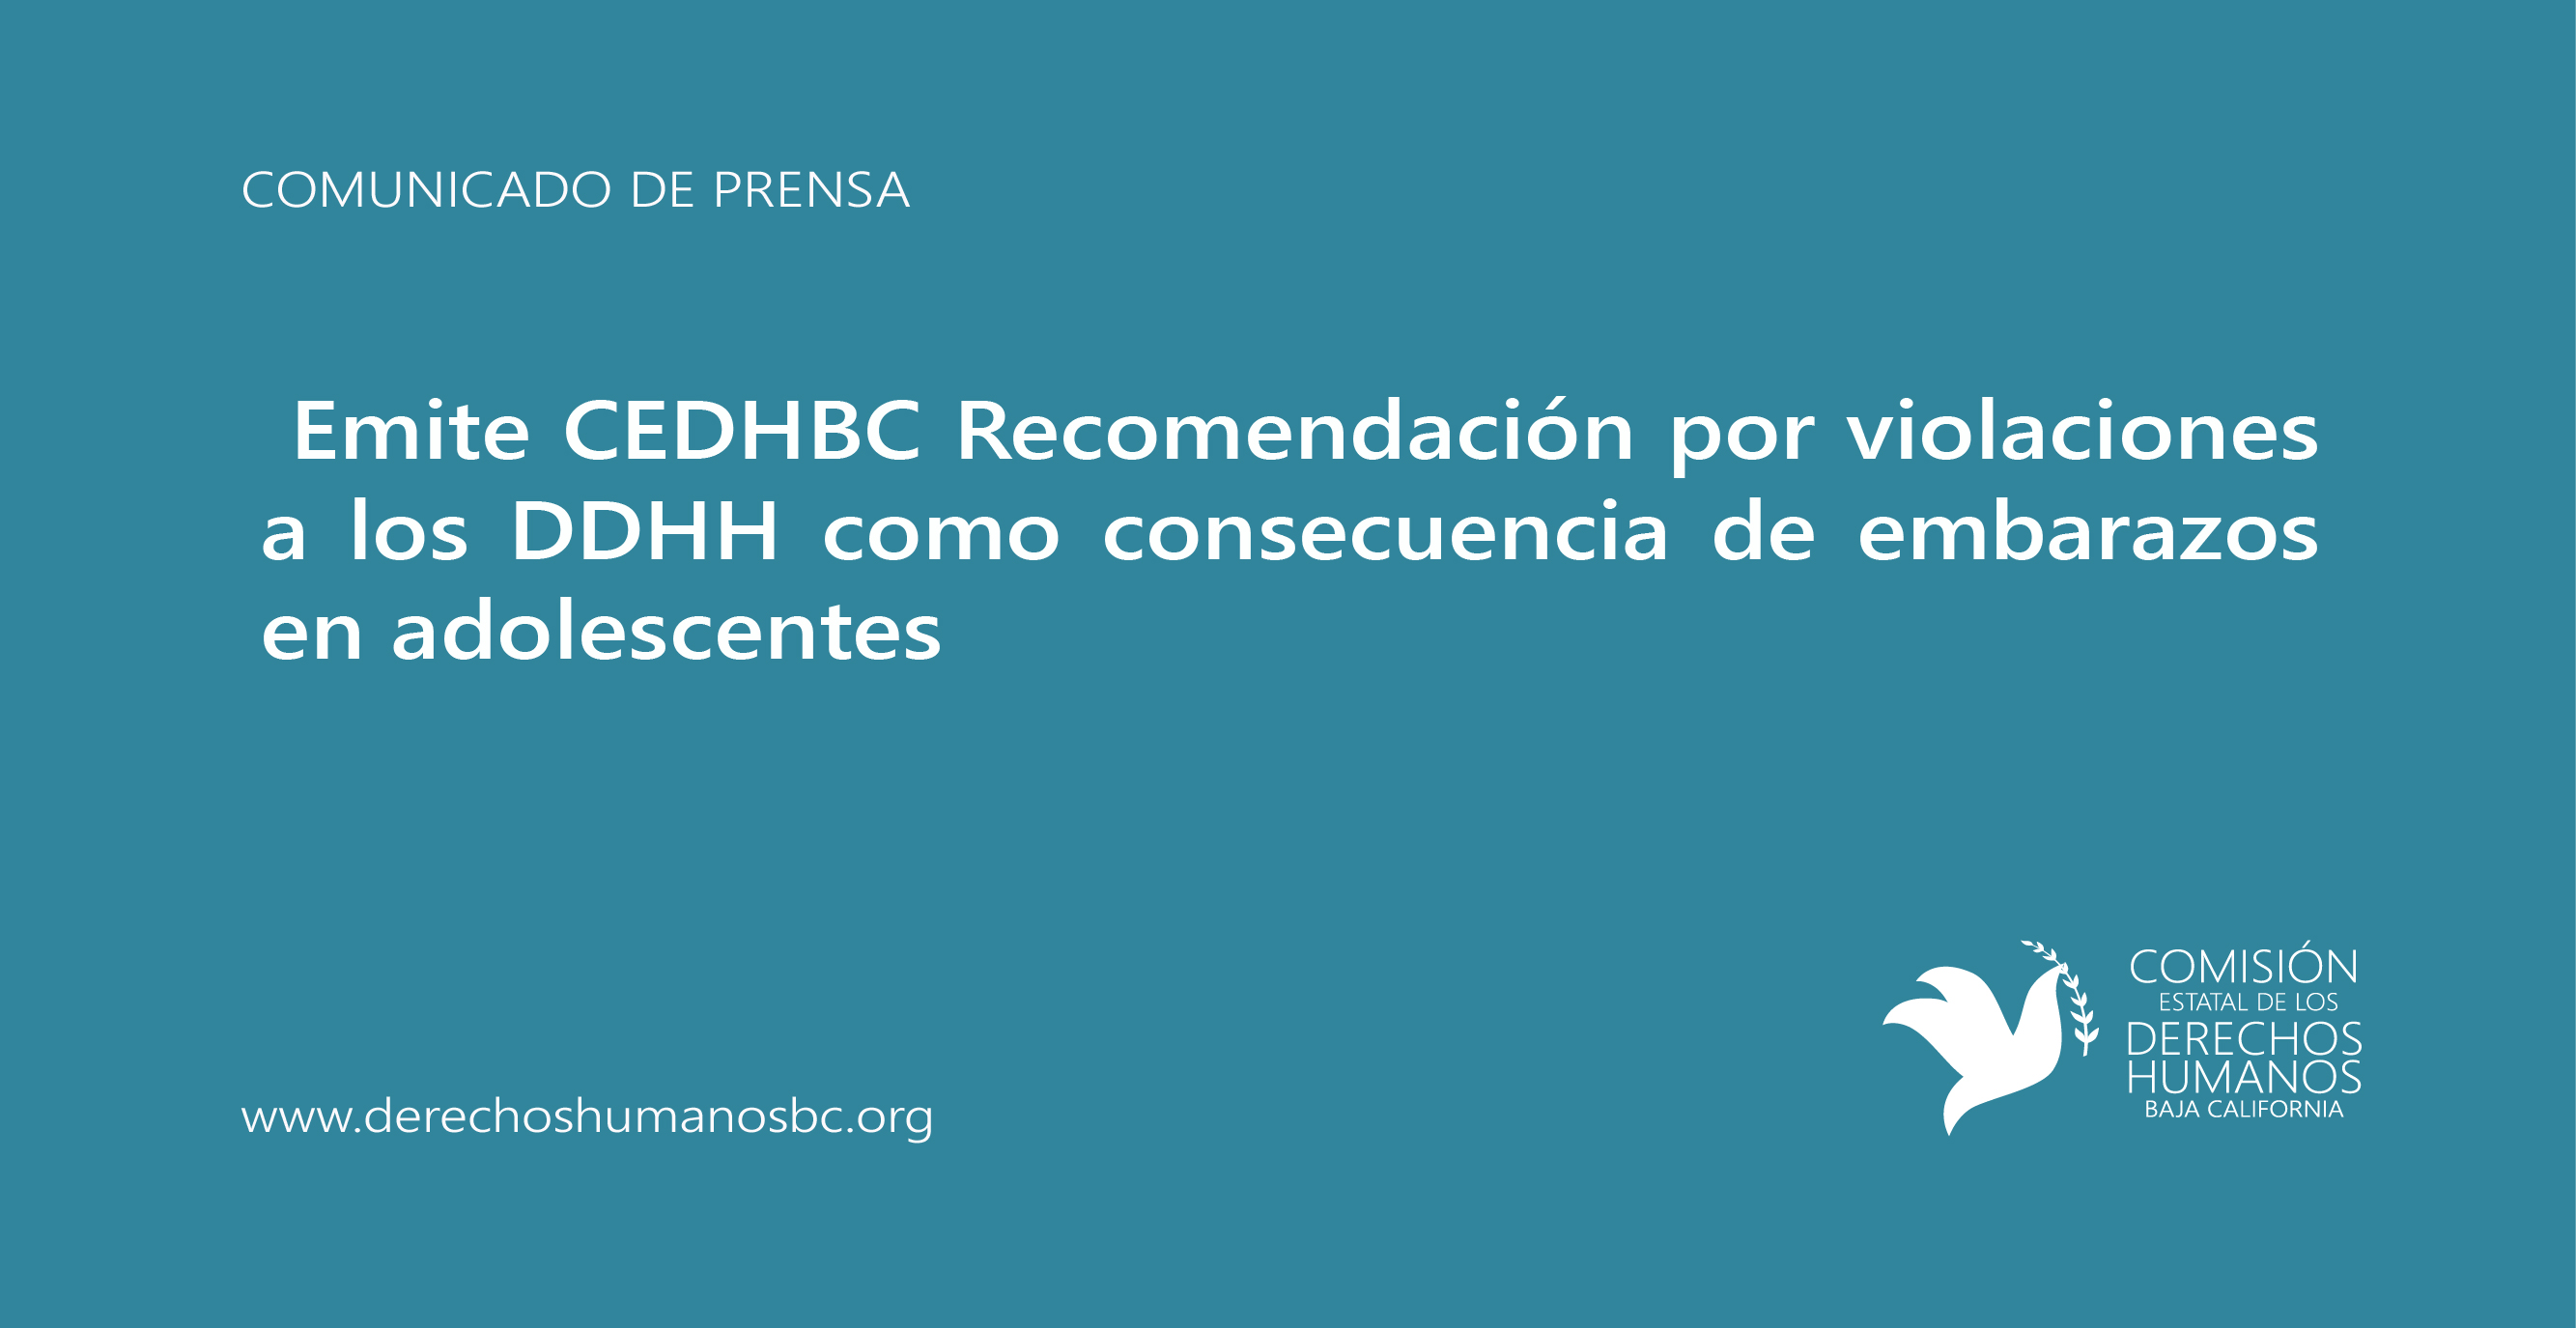 Emite CEDHBC Recomendación por violaciones a los DDHH como consecuencia de embarazos en adolescentes